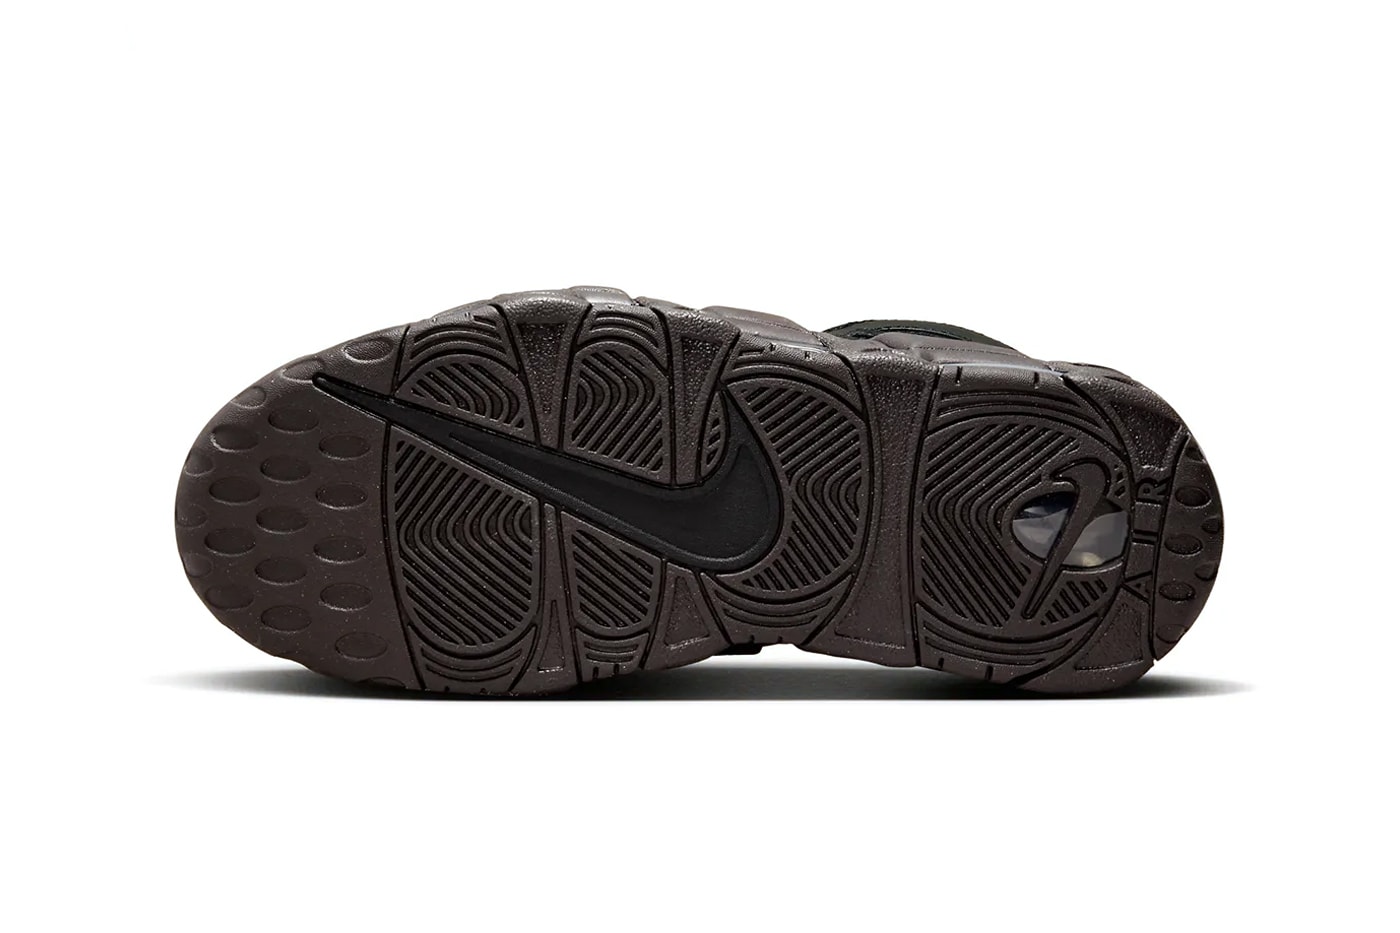 ナイキから重厚感のあるレザーを纏ったエアモアアップテンポの新色が登場 Nike Air More Uptempo Arrives in a Muddy Sole black brown leather DV1137-001 swoosh retro basketball shoe 